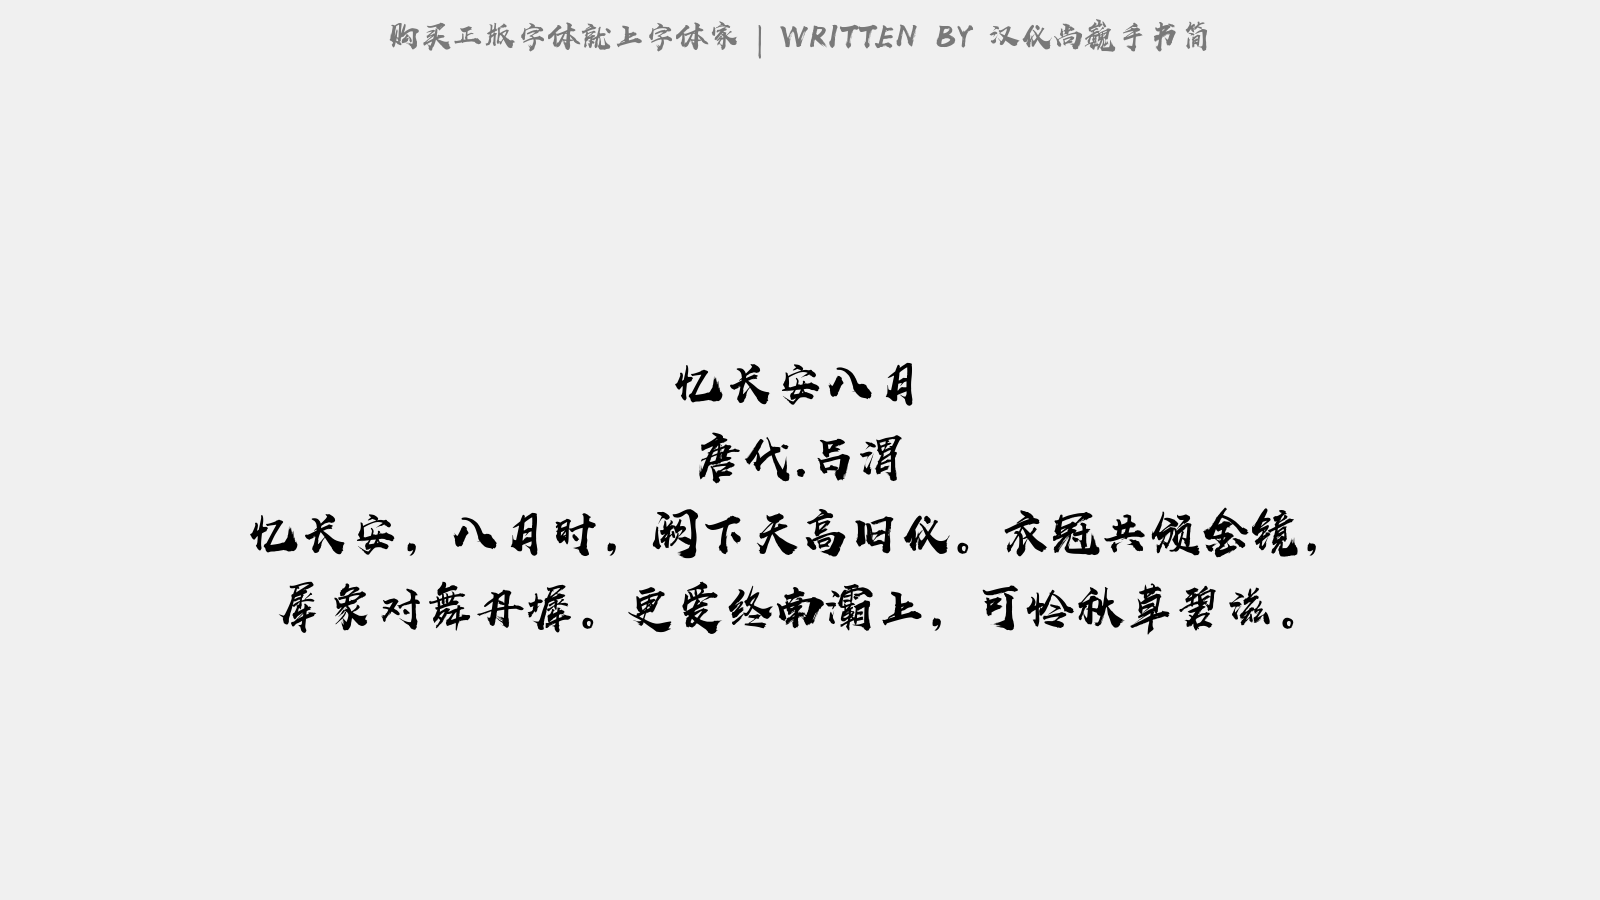 汉仪尚巍手书简正版字体下载 正版中文字体下载尽在字体家